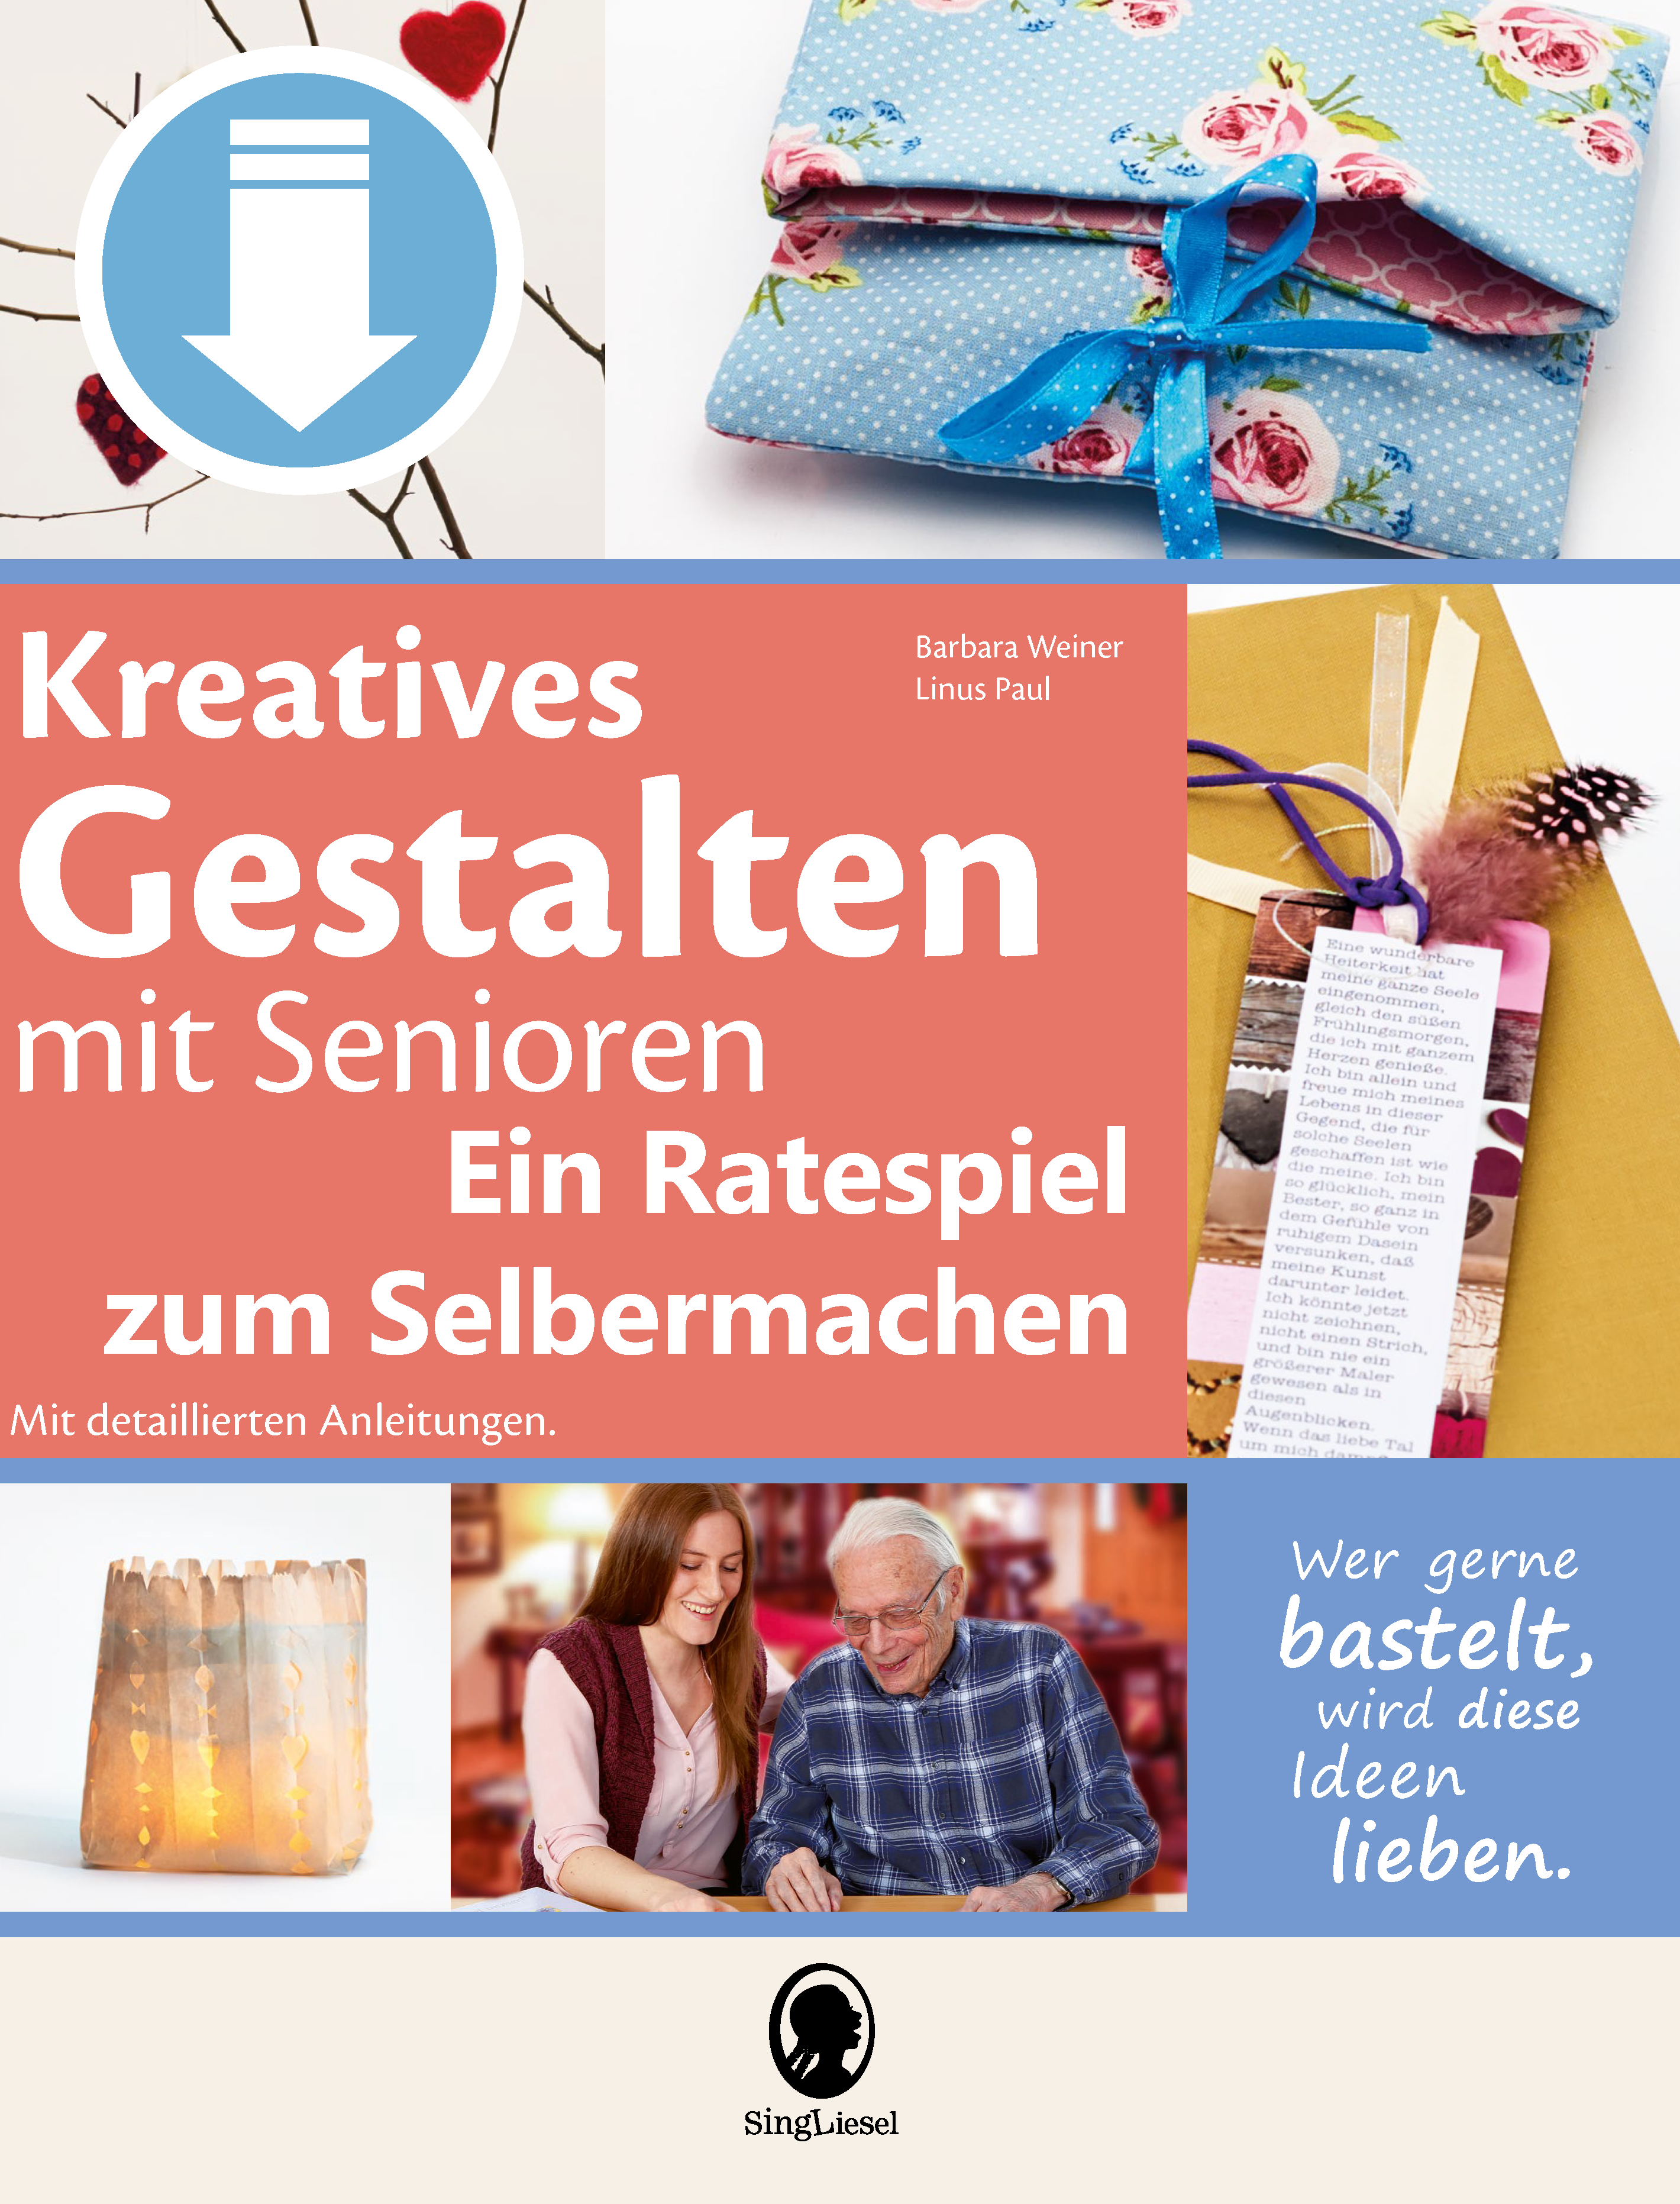 Kreatives Gestalten mit Senioren Ratespiel - PDF- Download